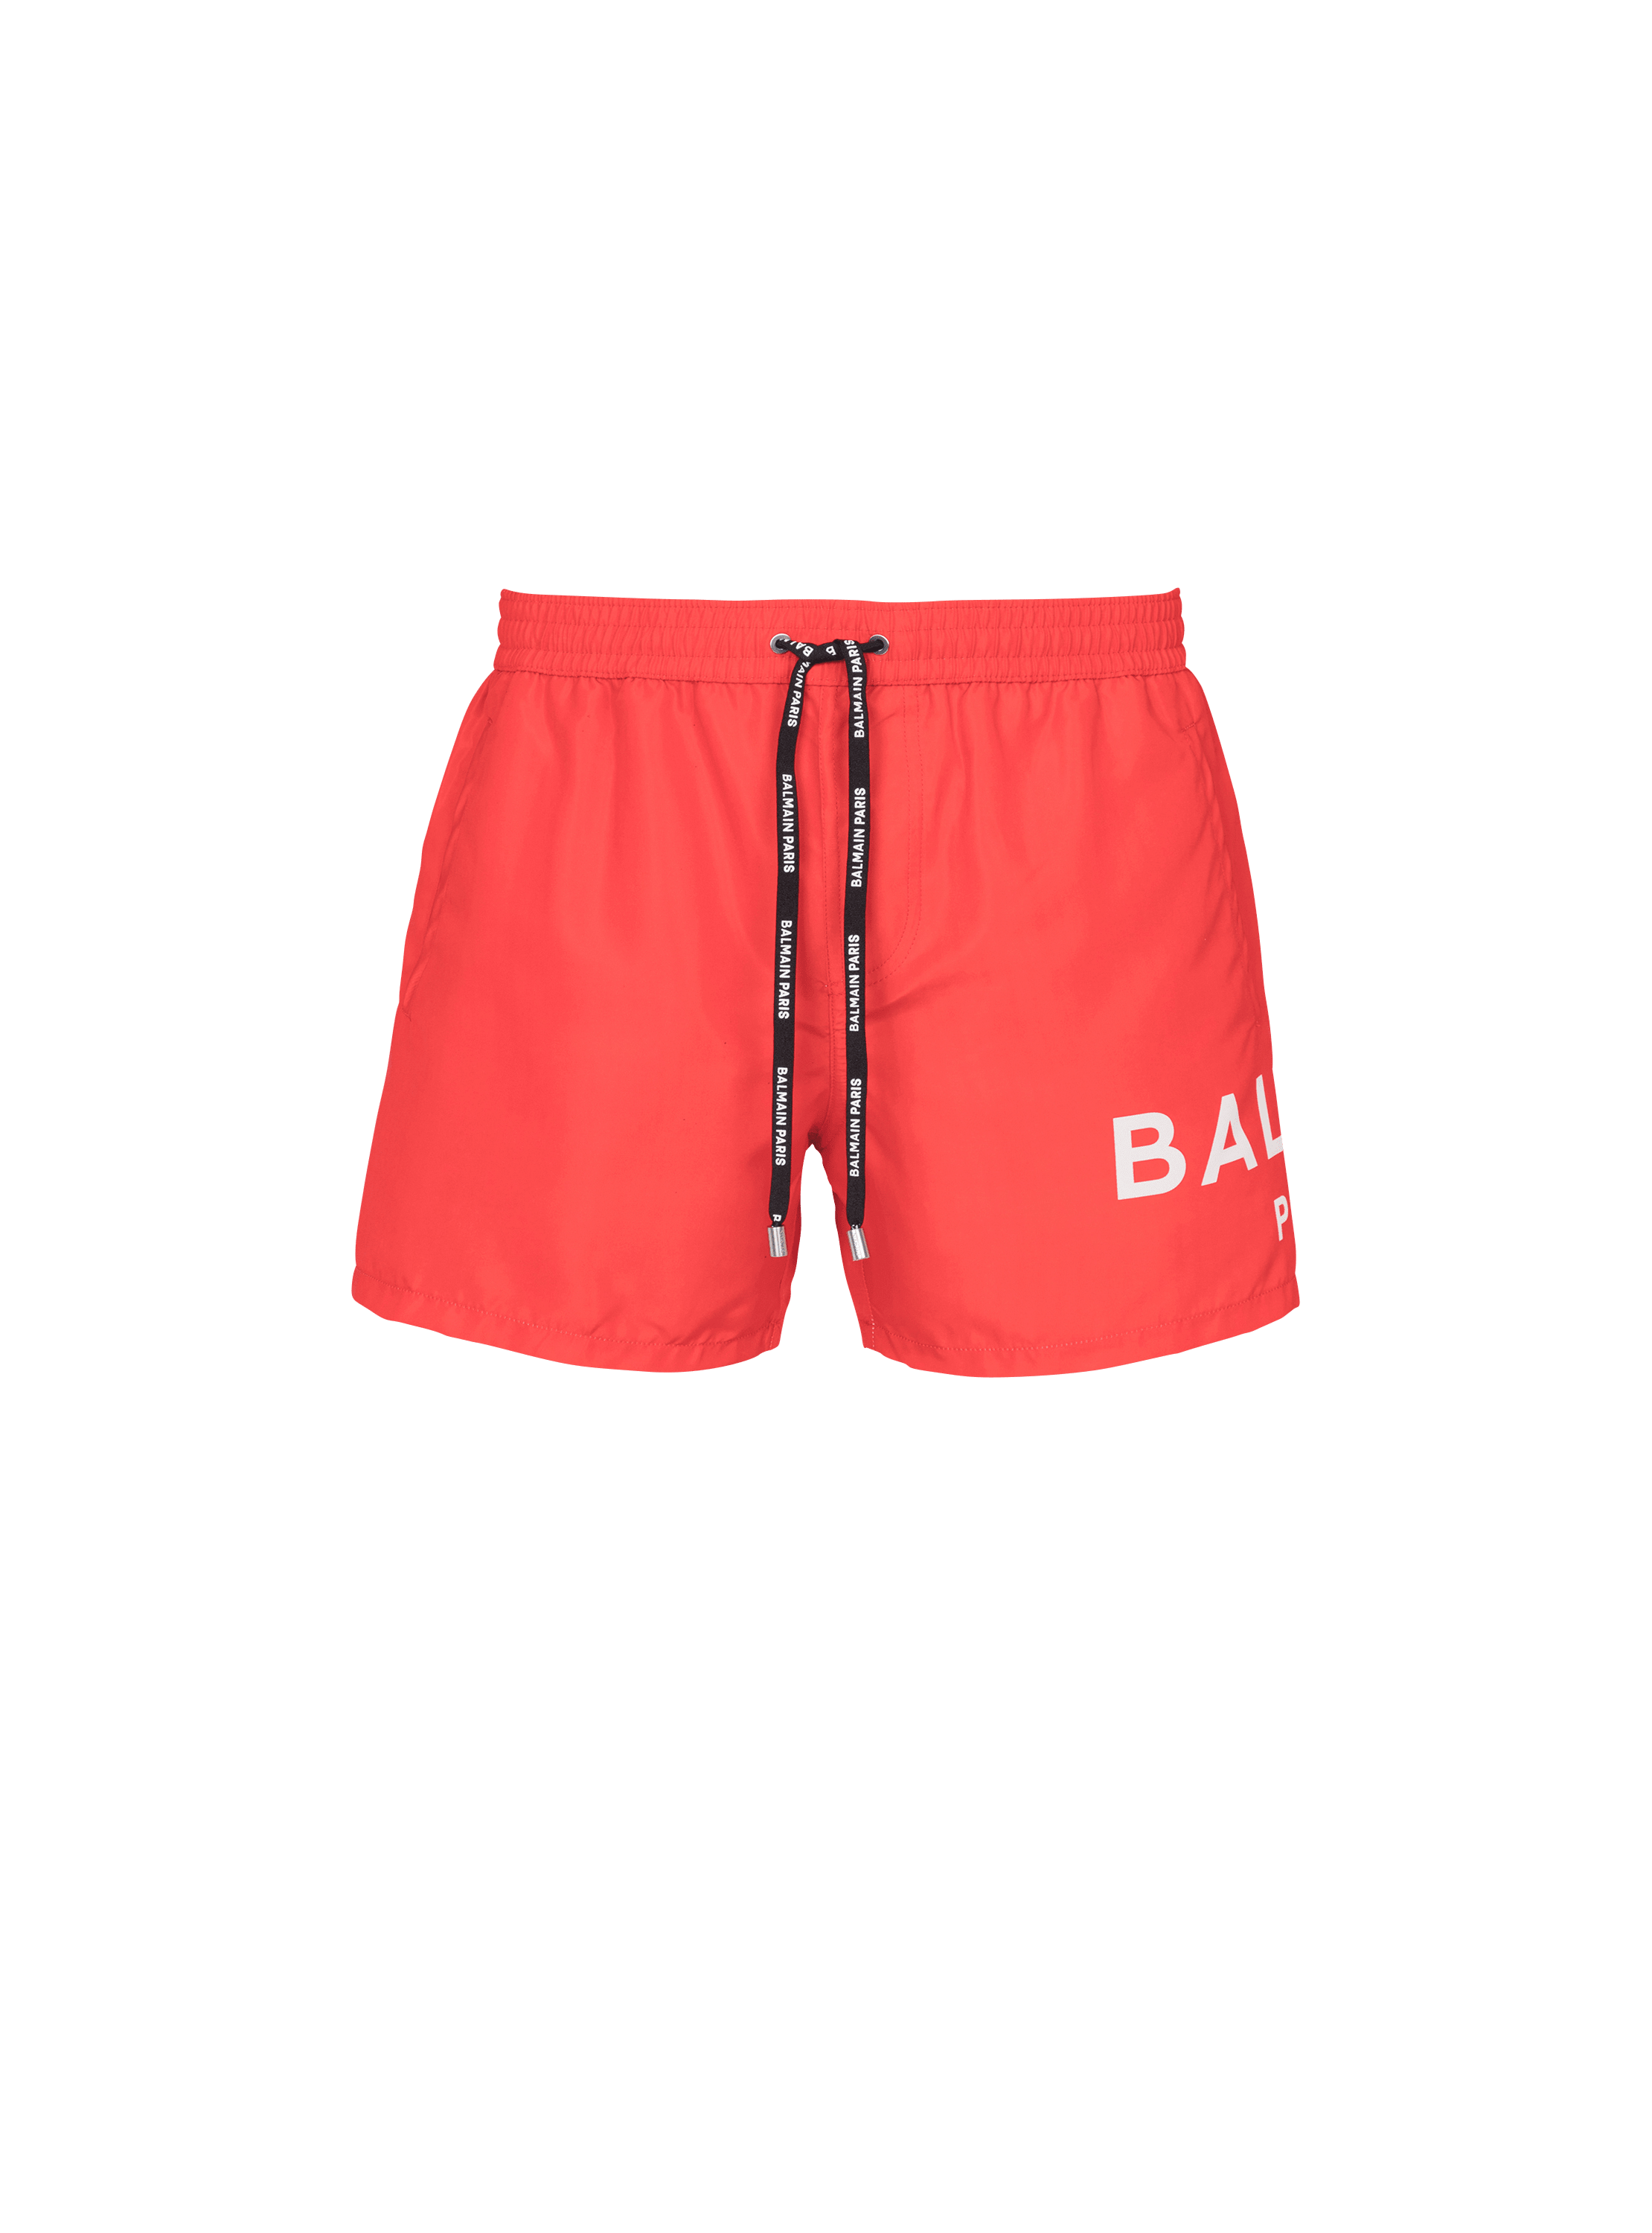 Shorts da bagno con logo Balmain, rosso, hi-res